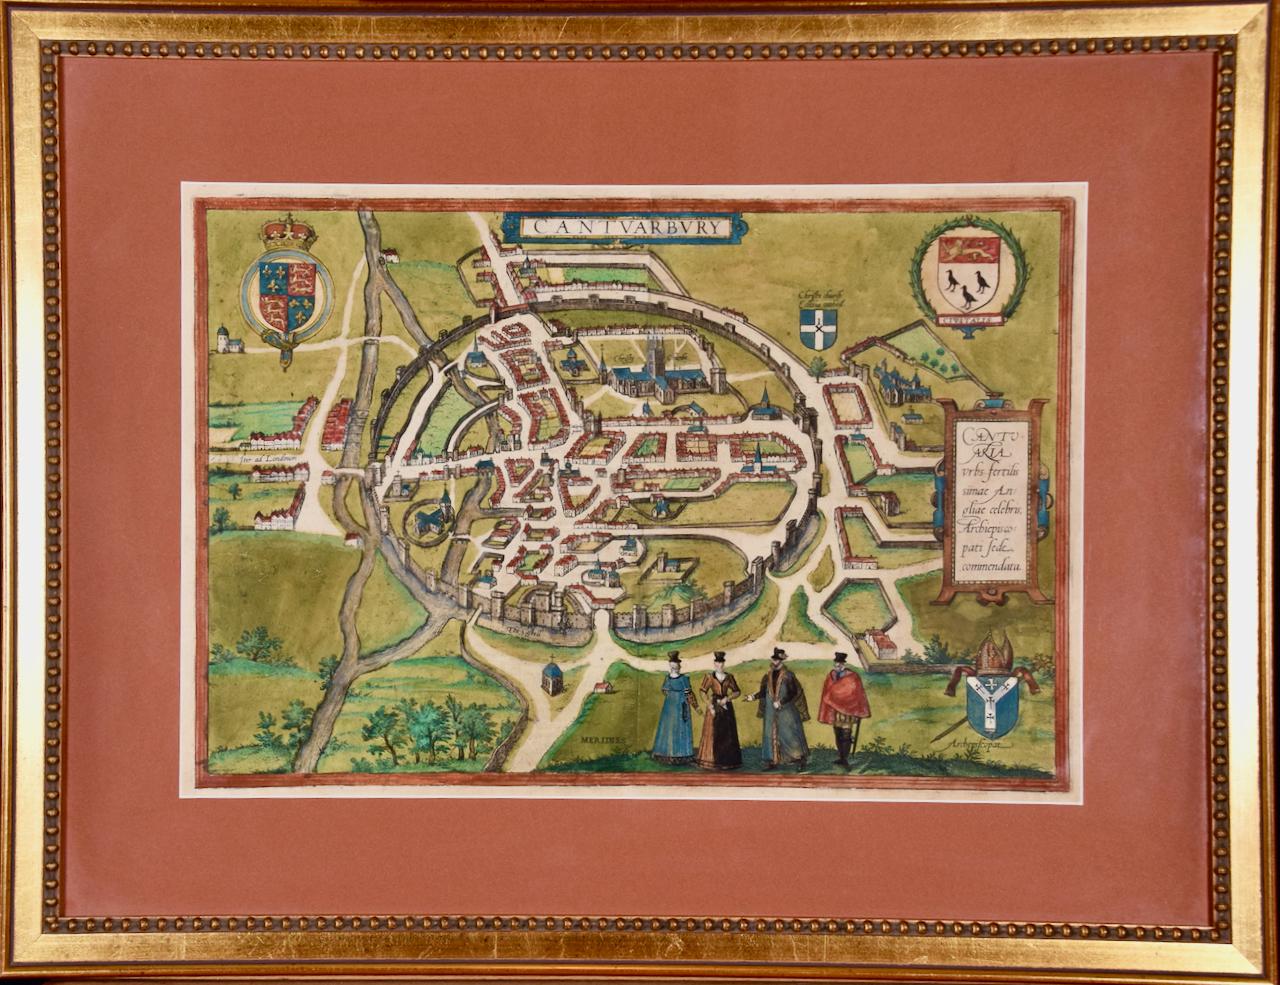 Canterbury : Une carte originale du 16e C. encadrée et coloriée à la main par Braun & Hogenberg - Print de Frans Hogenberg